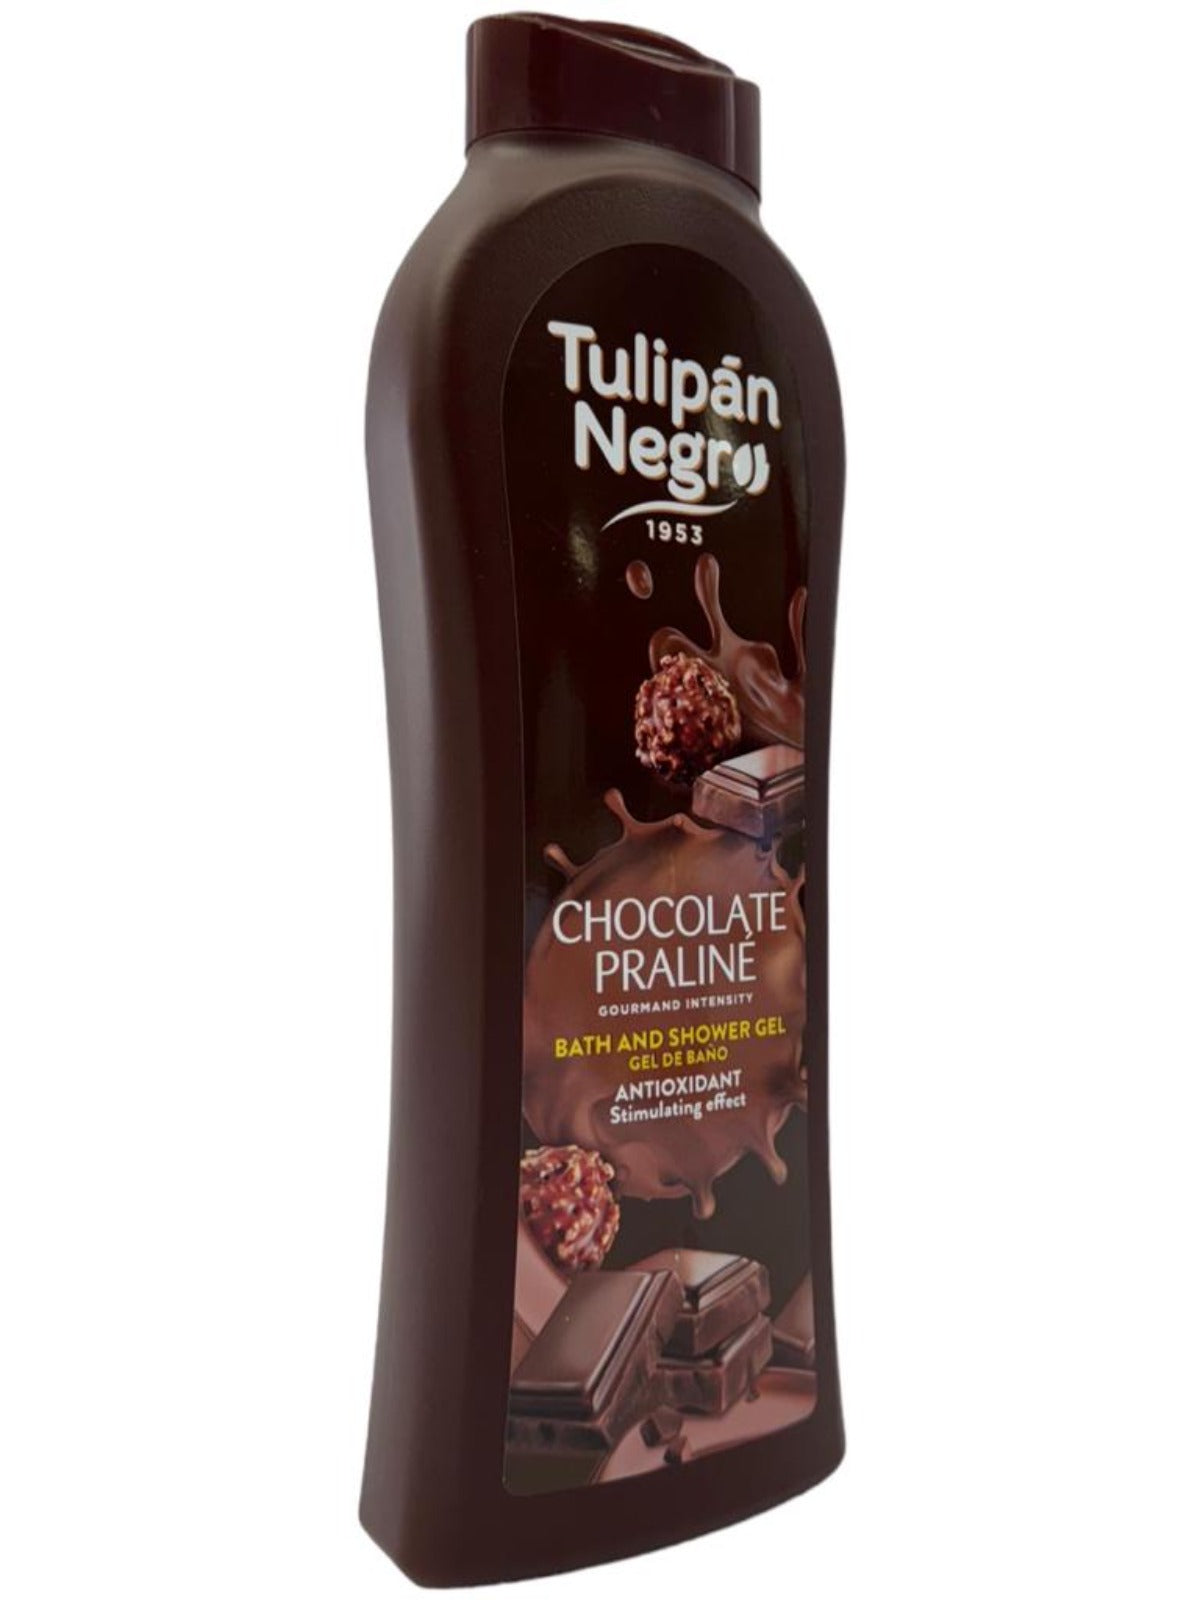 Tulipan Negro Chocolate Praline Spanish Bath And Shower Gel 650ml